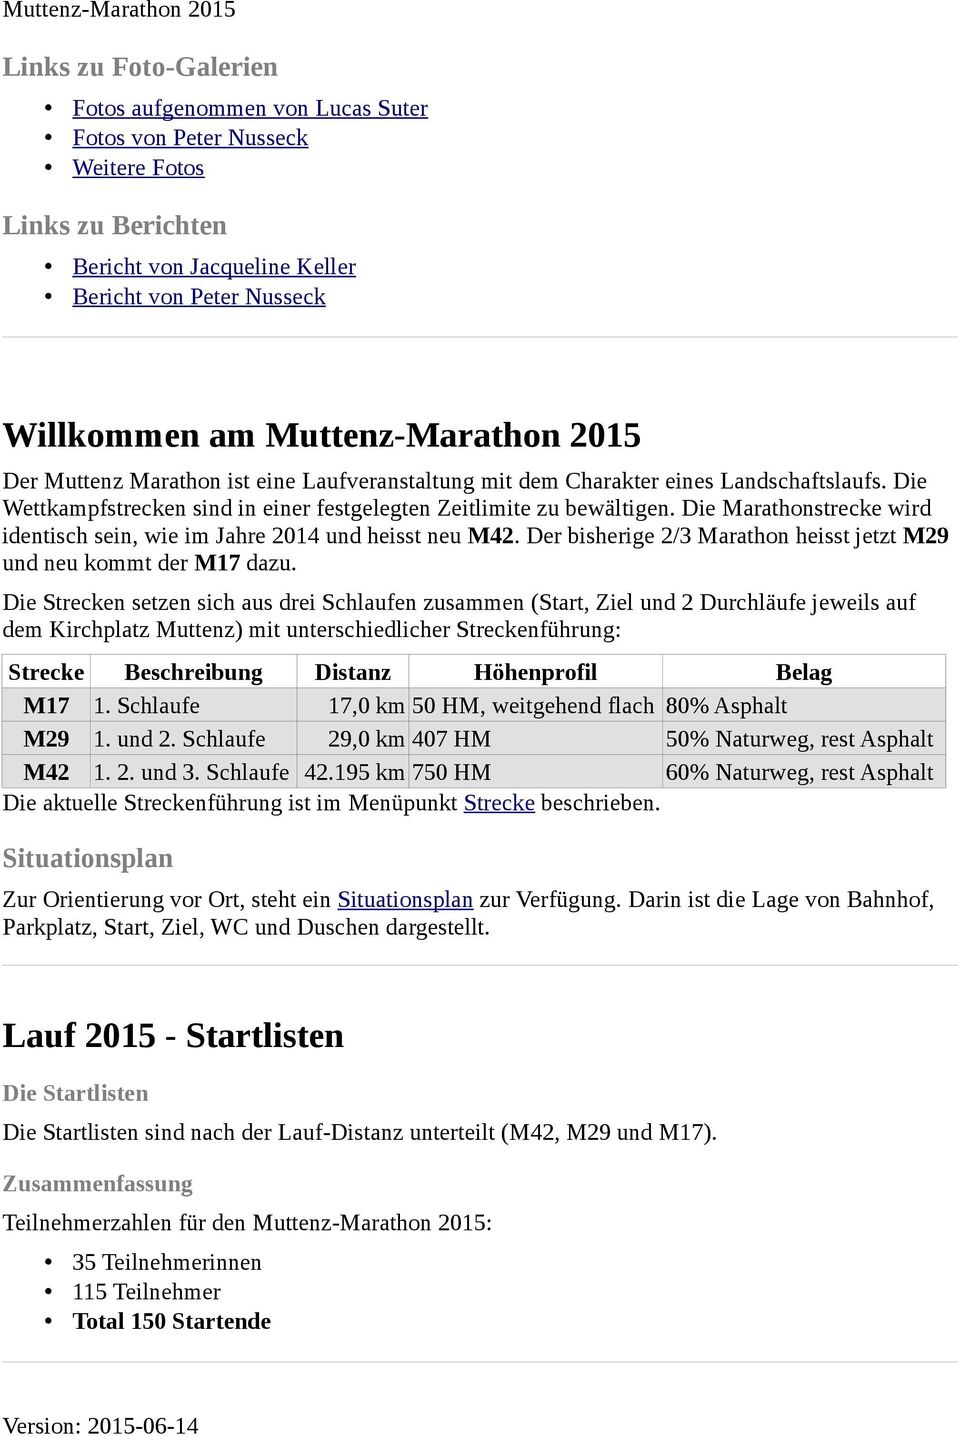 Die Marathonstrecke wird identisch sein, wie im Jahre 2014 und heisst neu M42. Der bisherige 2/3 Marathon heisst jetzt M29 und neu kommt der M17 dazu.